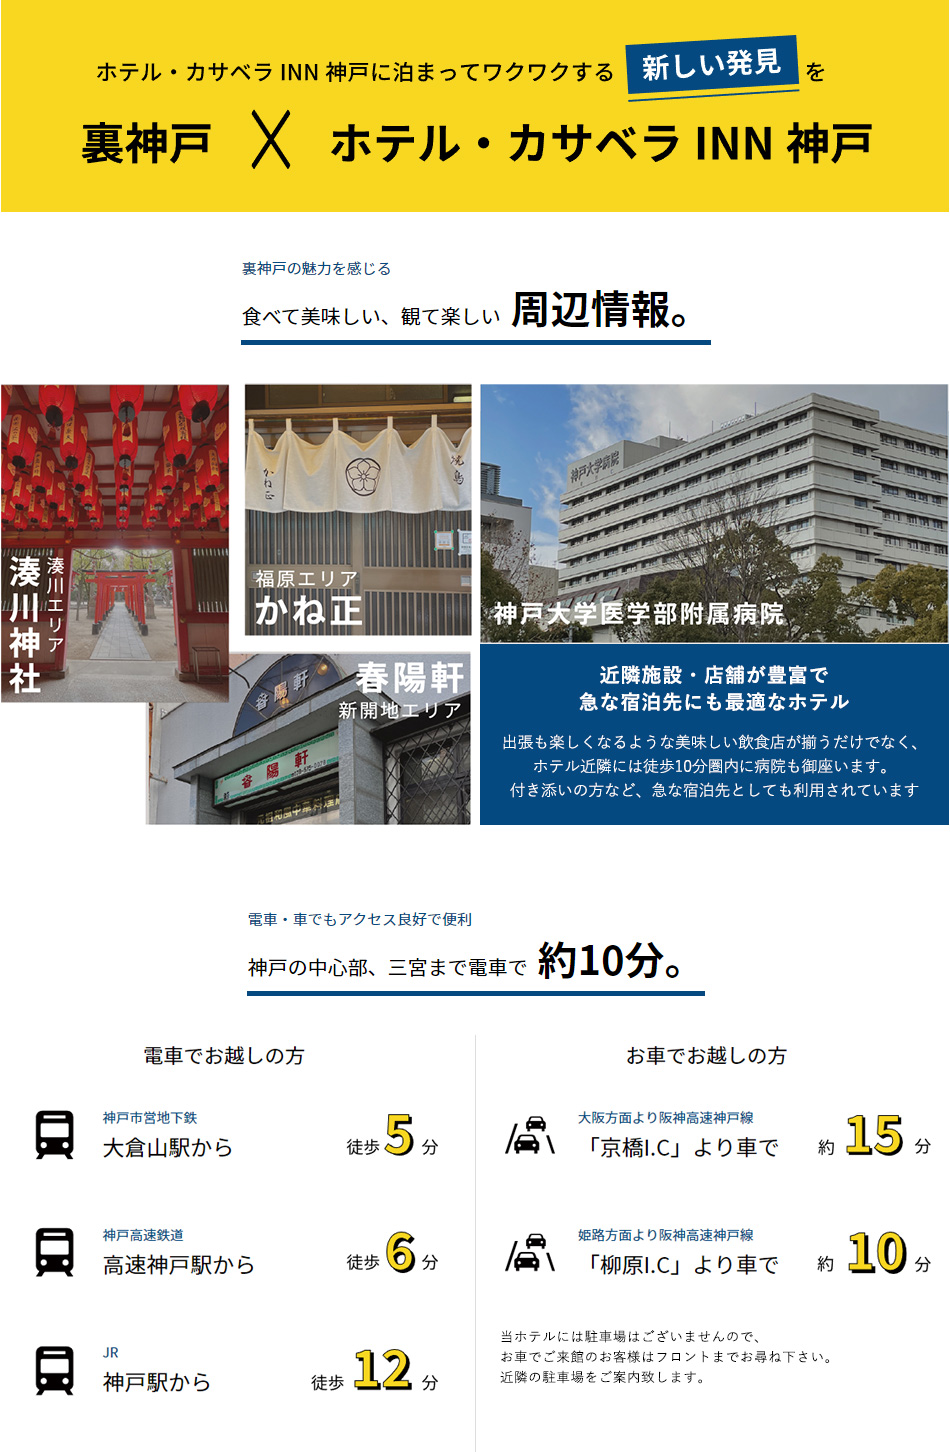 カサベライン神戸に泊まってワクワクする新しい発見を 裏神戸×ホテル・カサベラINN神戸